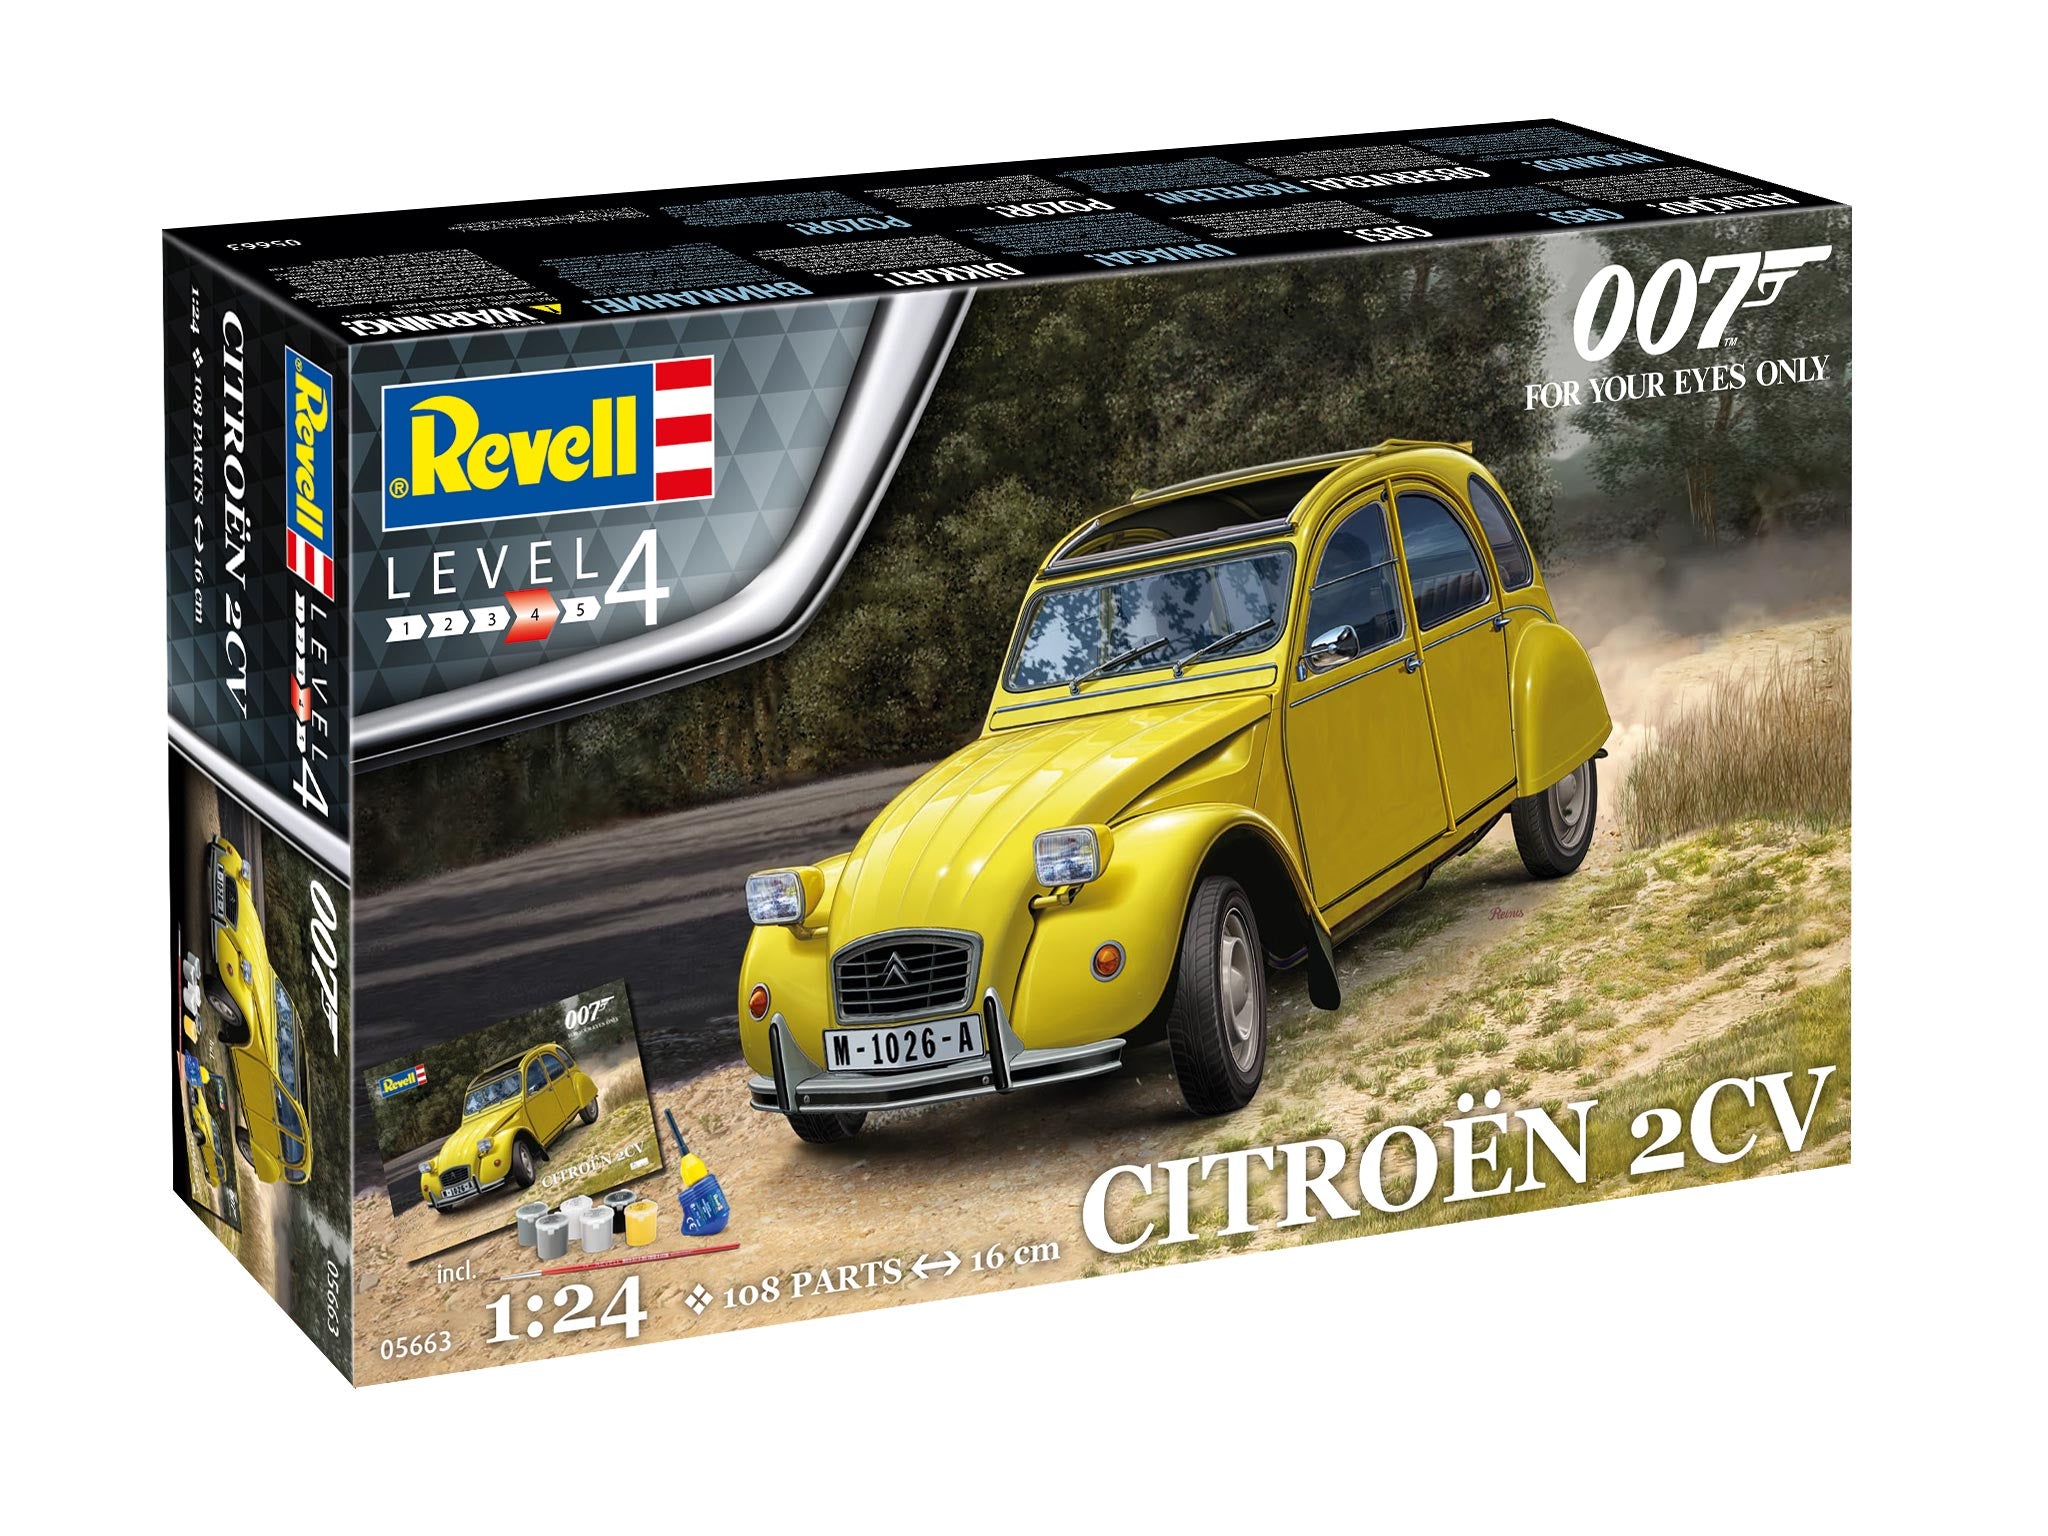 Maquette Coffret Cadeau - Citroën 2CV (James Bond 007) Pour Vos Yeux  Seulement - 1/24 - REVELL 05663